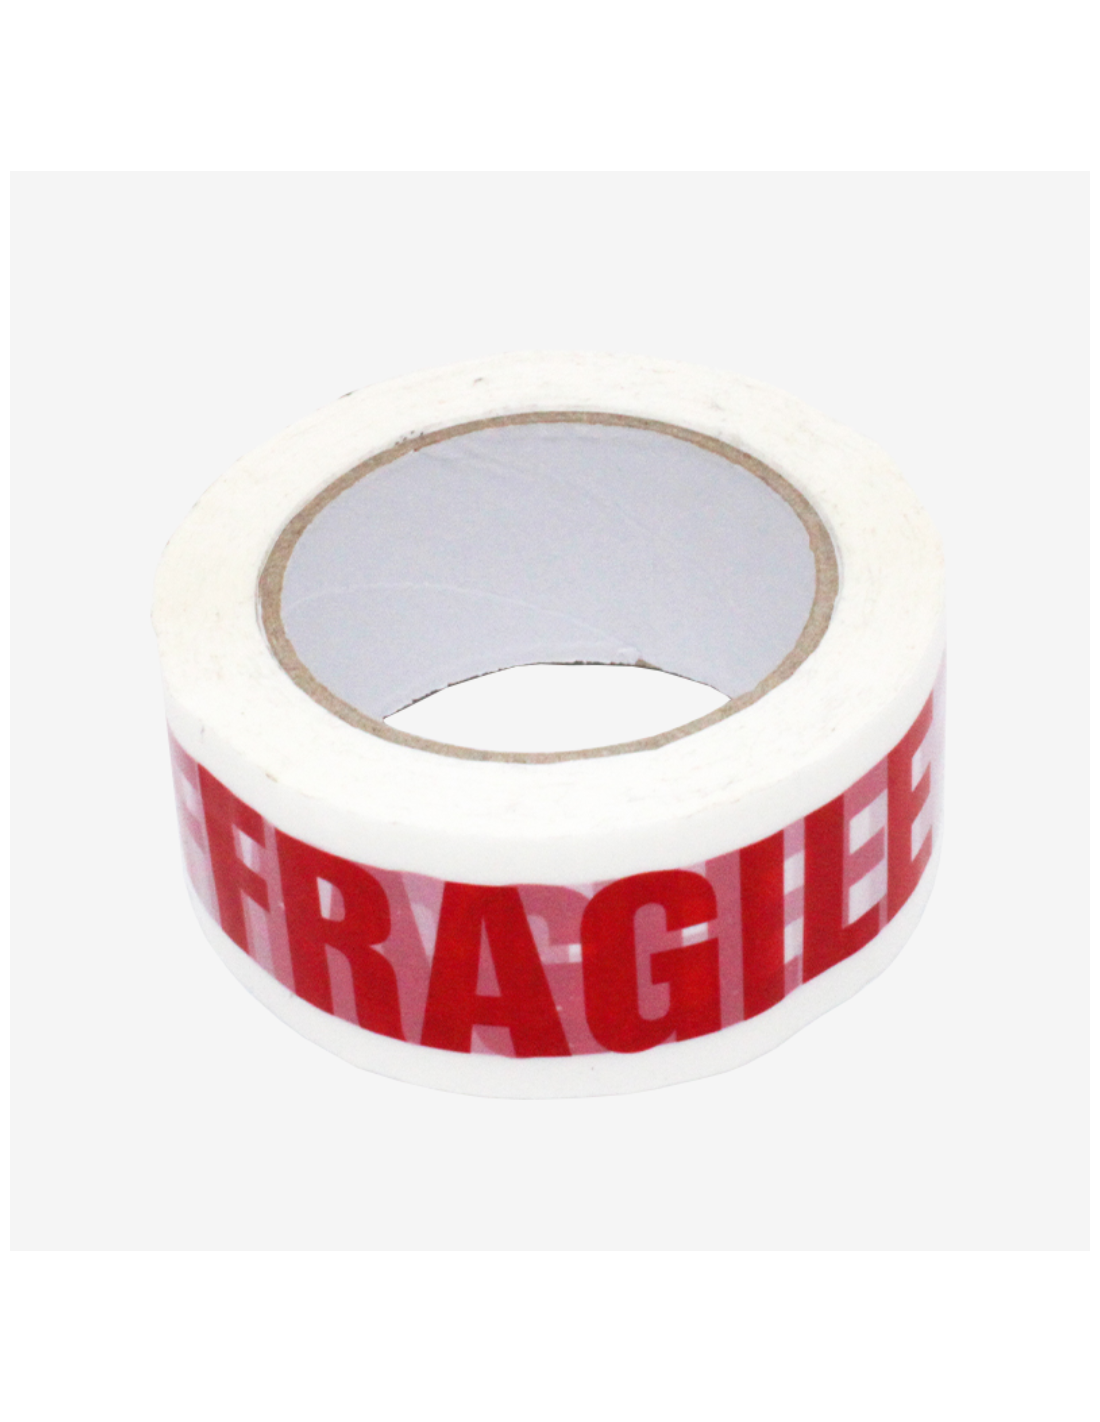 Etiquette fragile pour colis - Ruban adhésif imprimé fragile